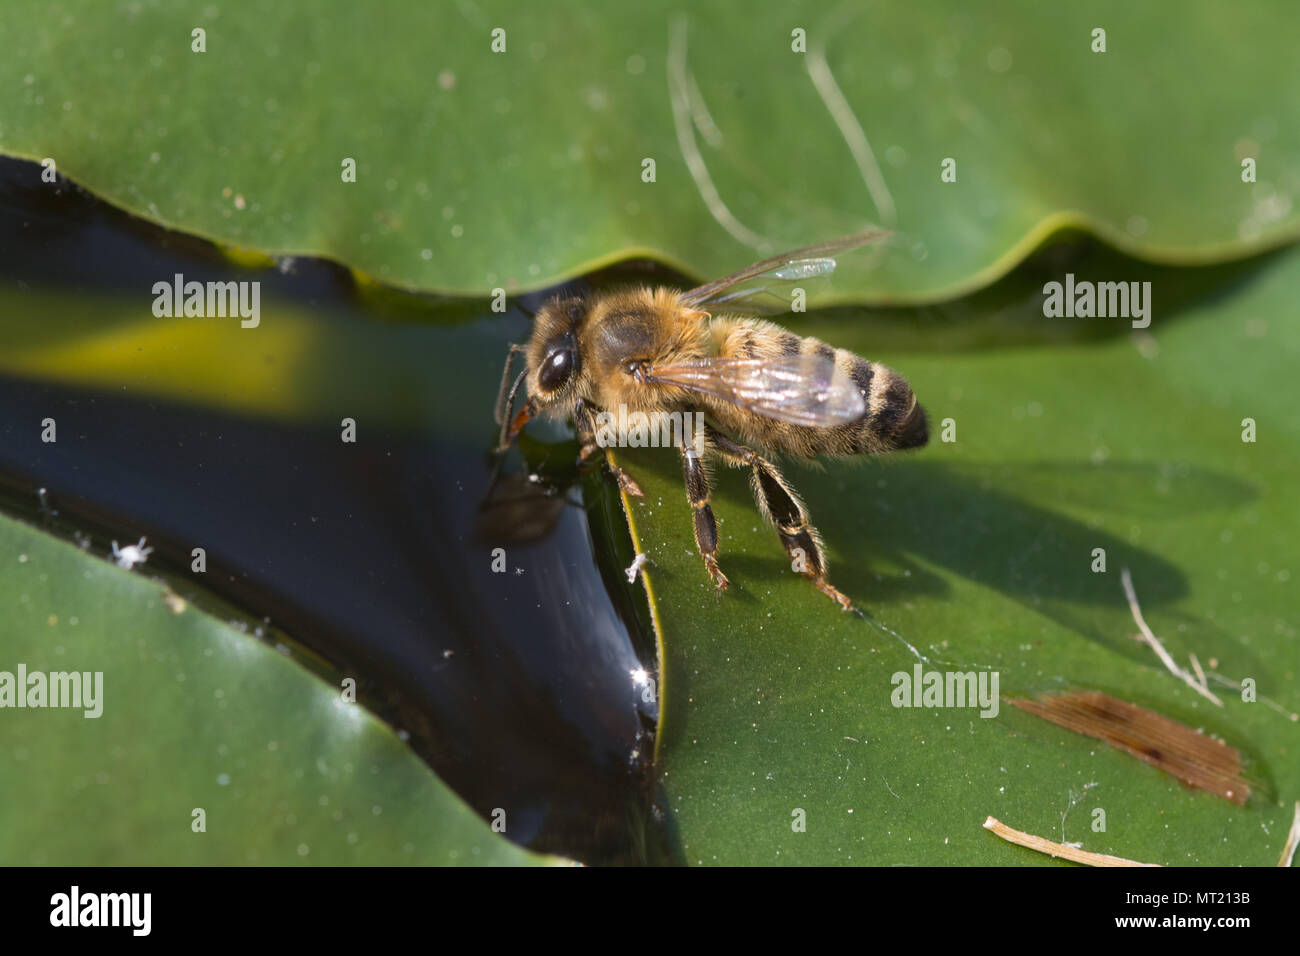 Honig BIENE (APIS) auf einem Lily pad Trinkwasser aus einem Gartenteich. Garten Tiere, insekt, insekten, Bienen Stockfoto